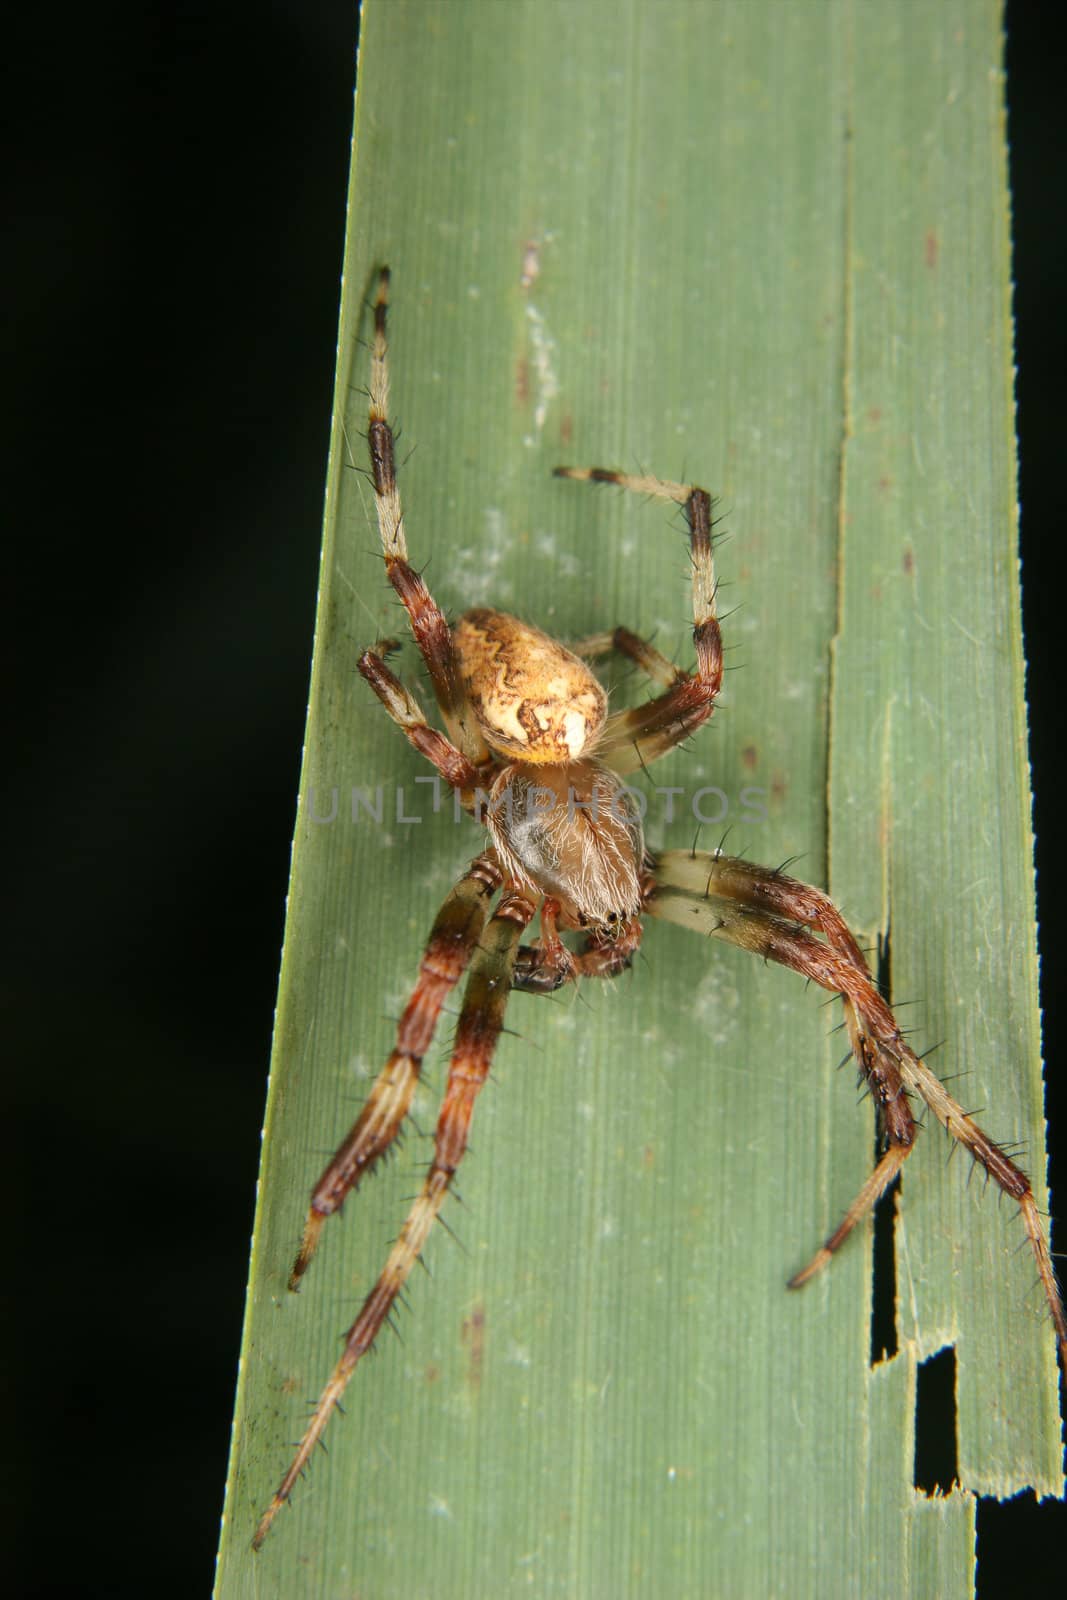 European garden spider (Araneus diadematus) by tdietrich